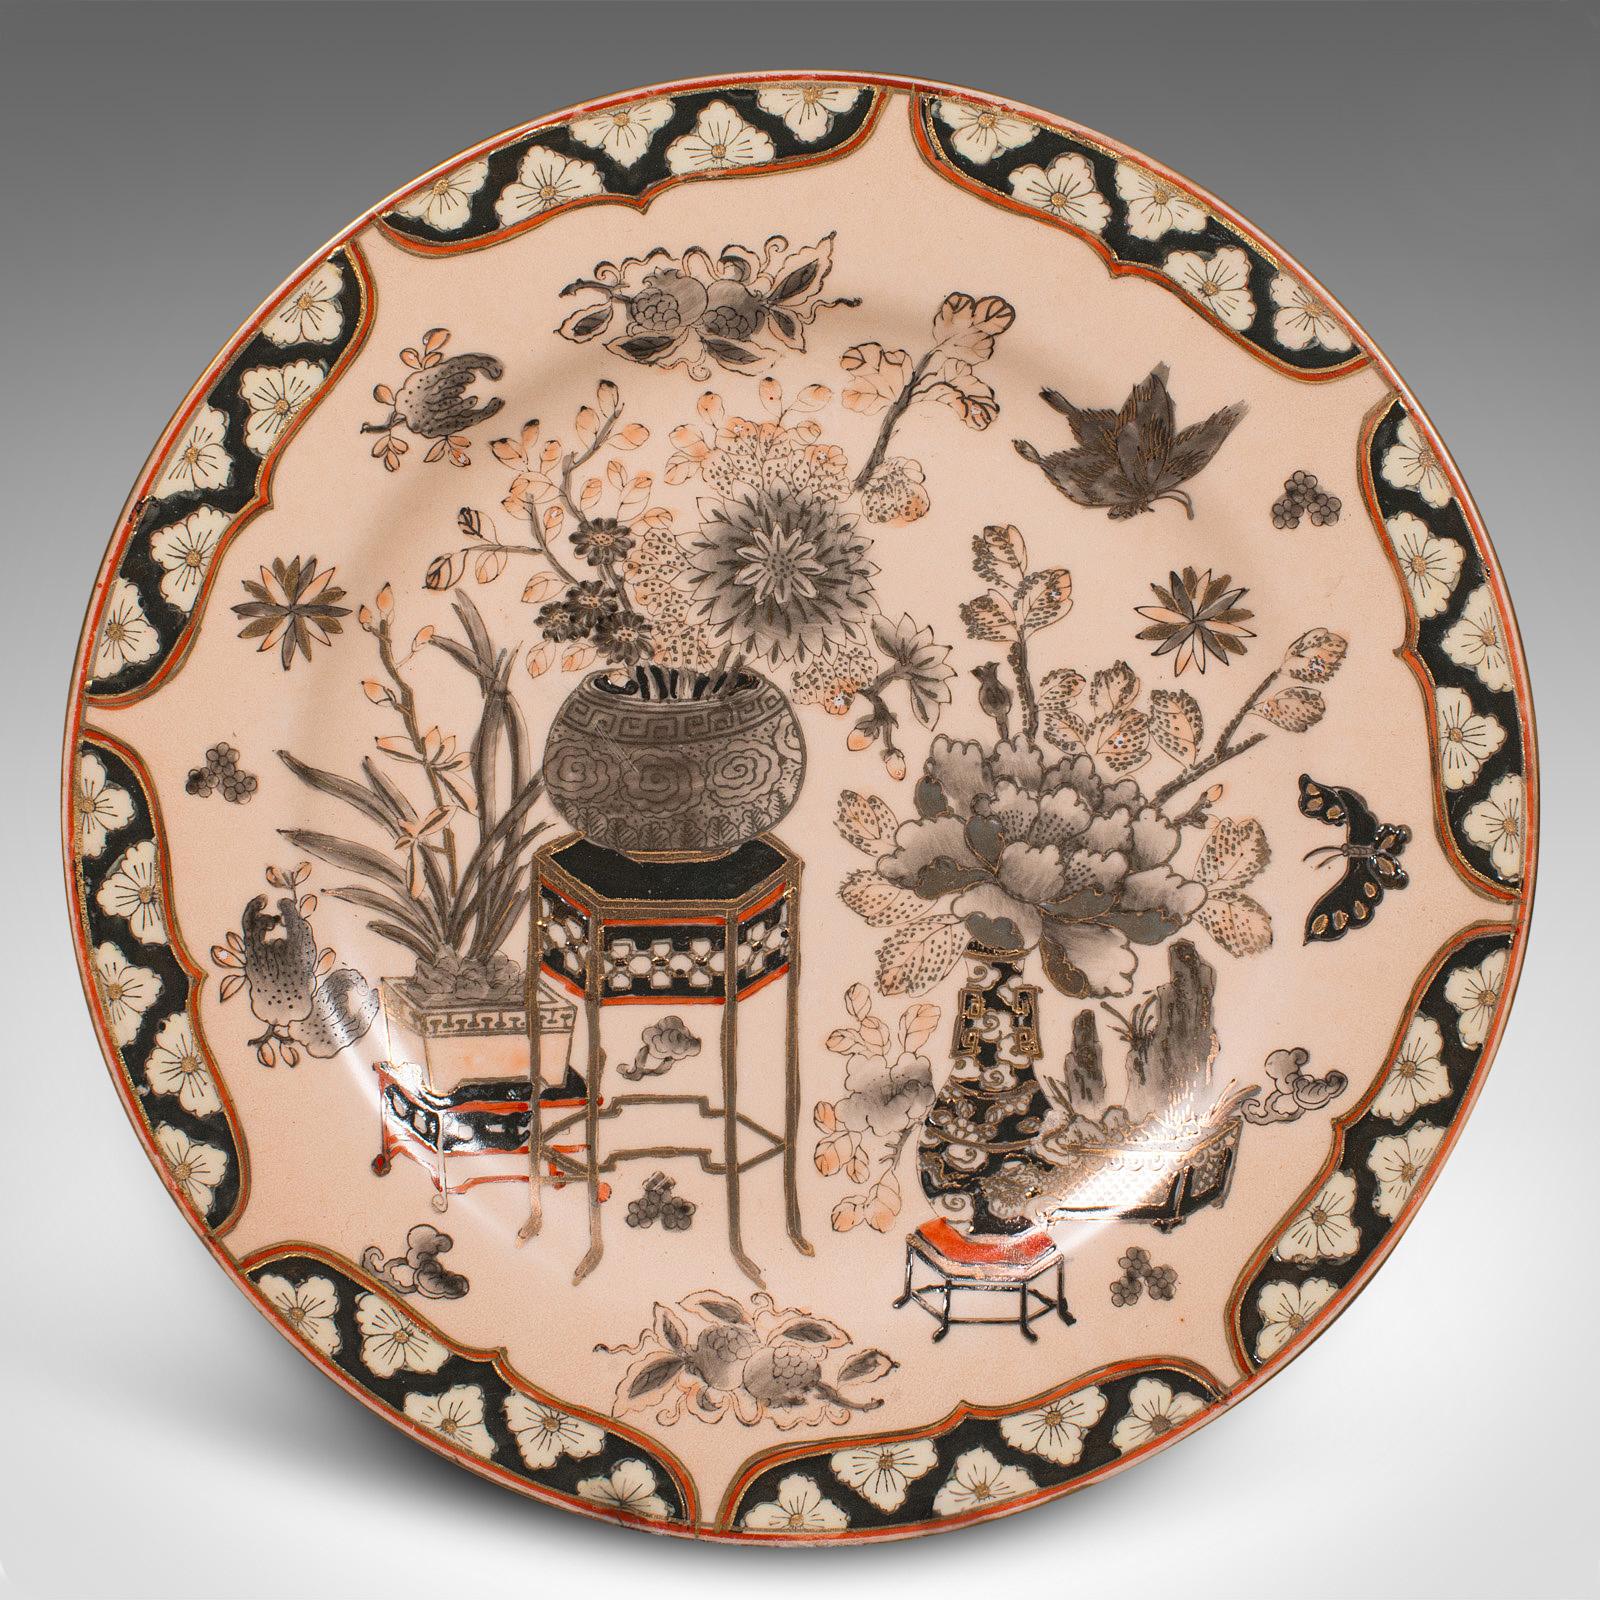 Dies ist ein dekoratives Vintage-Ladegerät. Ein chinesischer Keramikteller aus der späten Art-déco-Periode, um 1940.

Faszinierender dekorativer Teller mit traditionellem orientalischem Aussehen
Zeigt eine wünschenswerte gealterte Patina und in